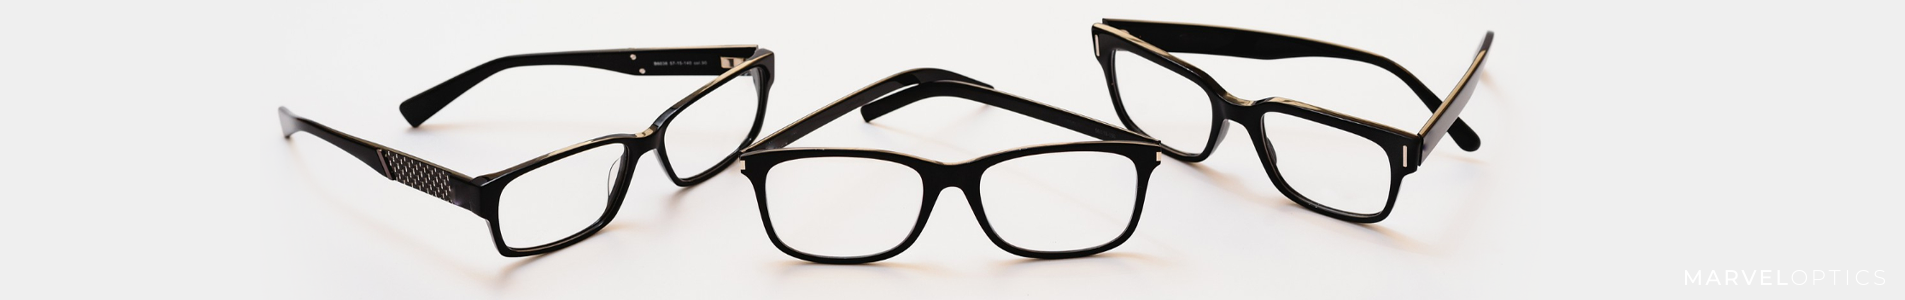 Top Tips for Choosing Between Progressive and Bifocal Lenses Header